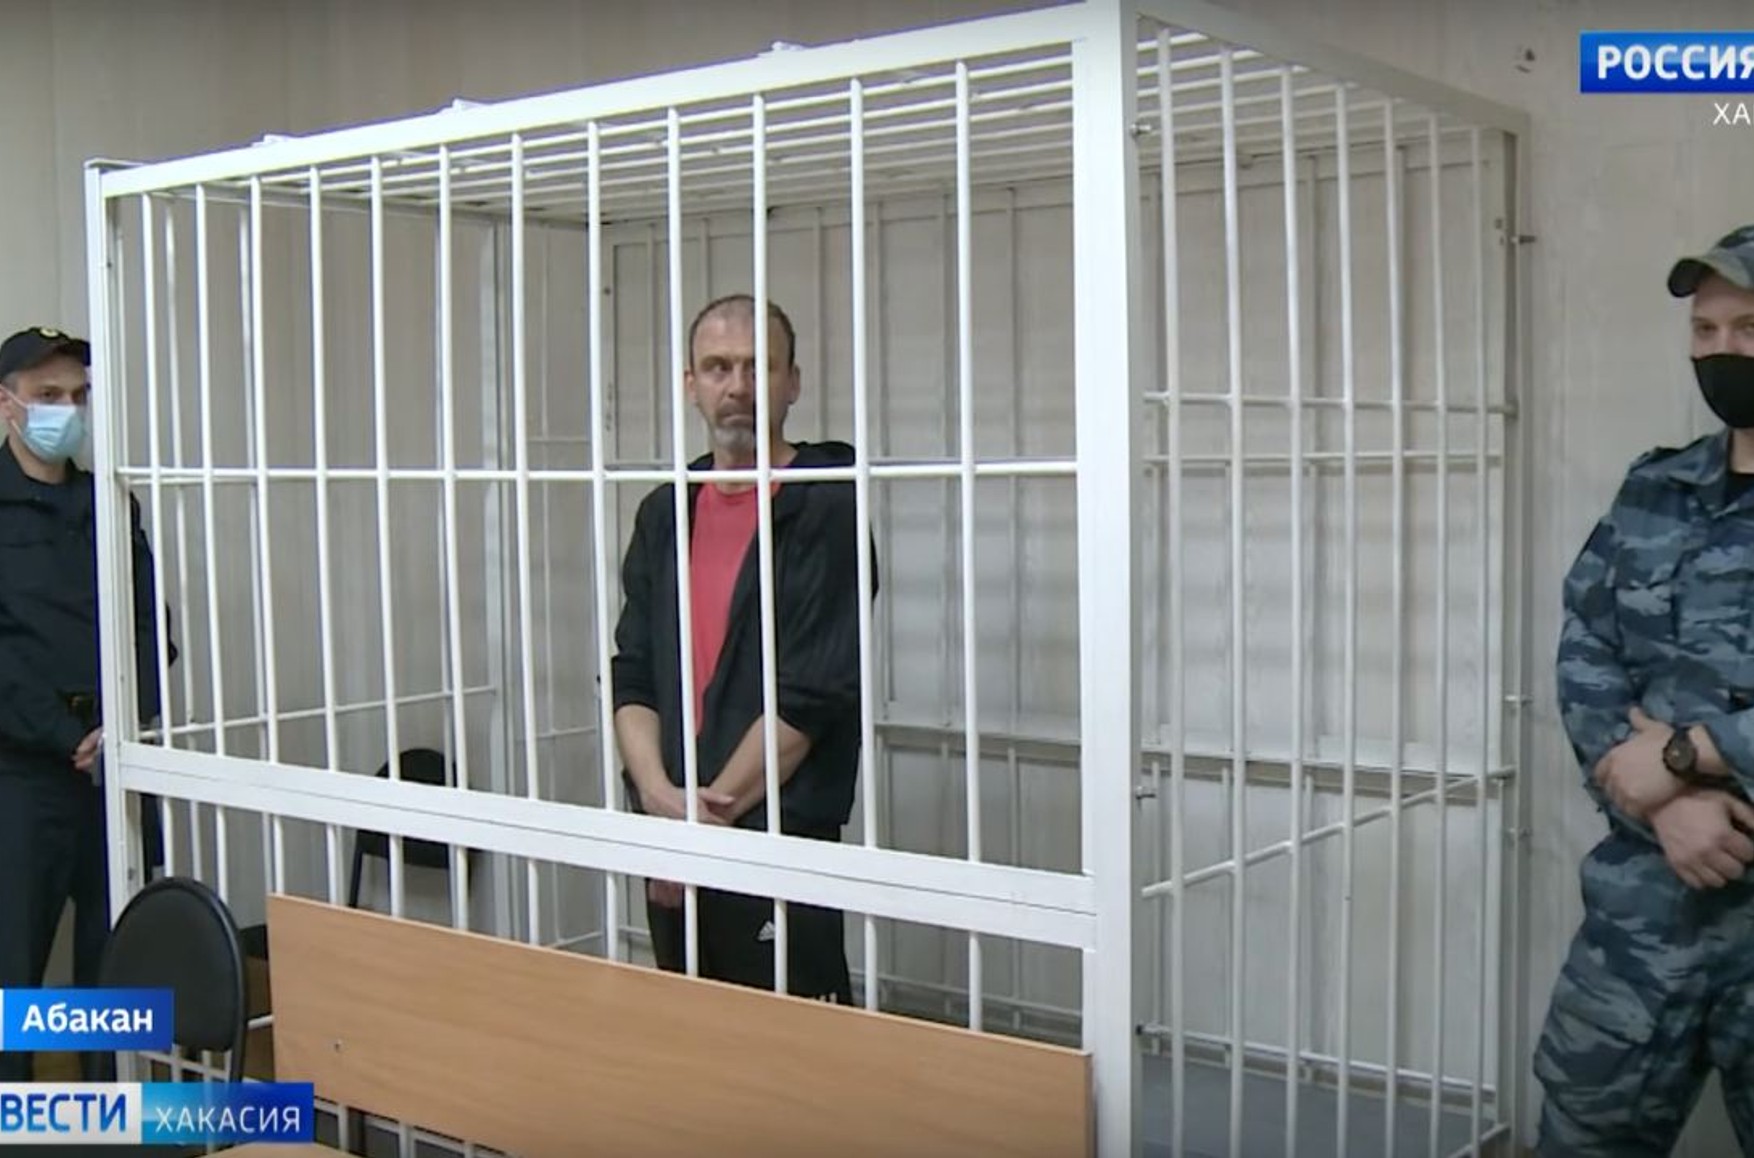 Журналиста Михаила Афанасьева, которого обвиняют в распространении «фейков» про войну, оставили под стражей. Ему грозит до 10 лет колонии